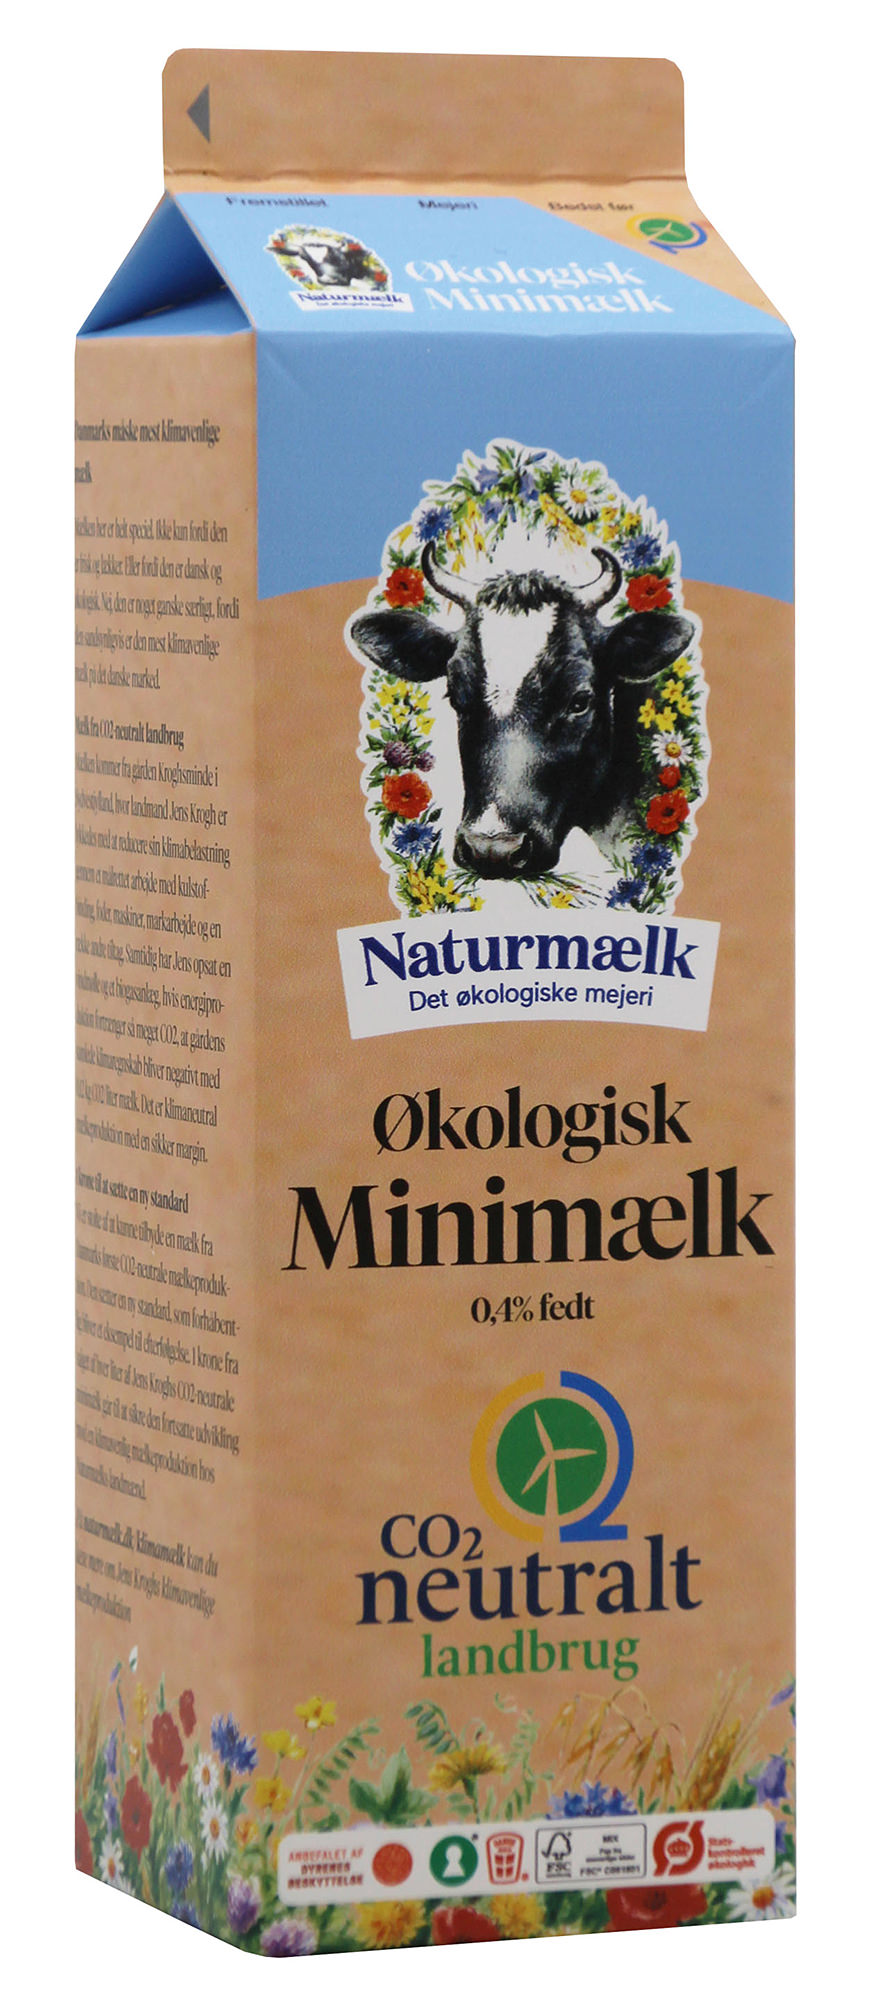 Flere eksperter mener, at anprisningen af den nye minimælk fra Naturmælk kan vildlede forbrugerne til at tro, at mælken er klimaneutral